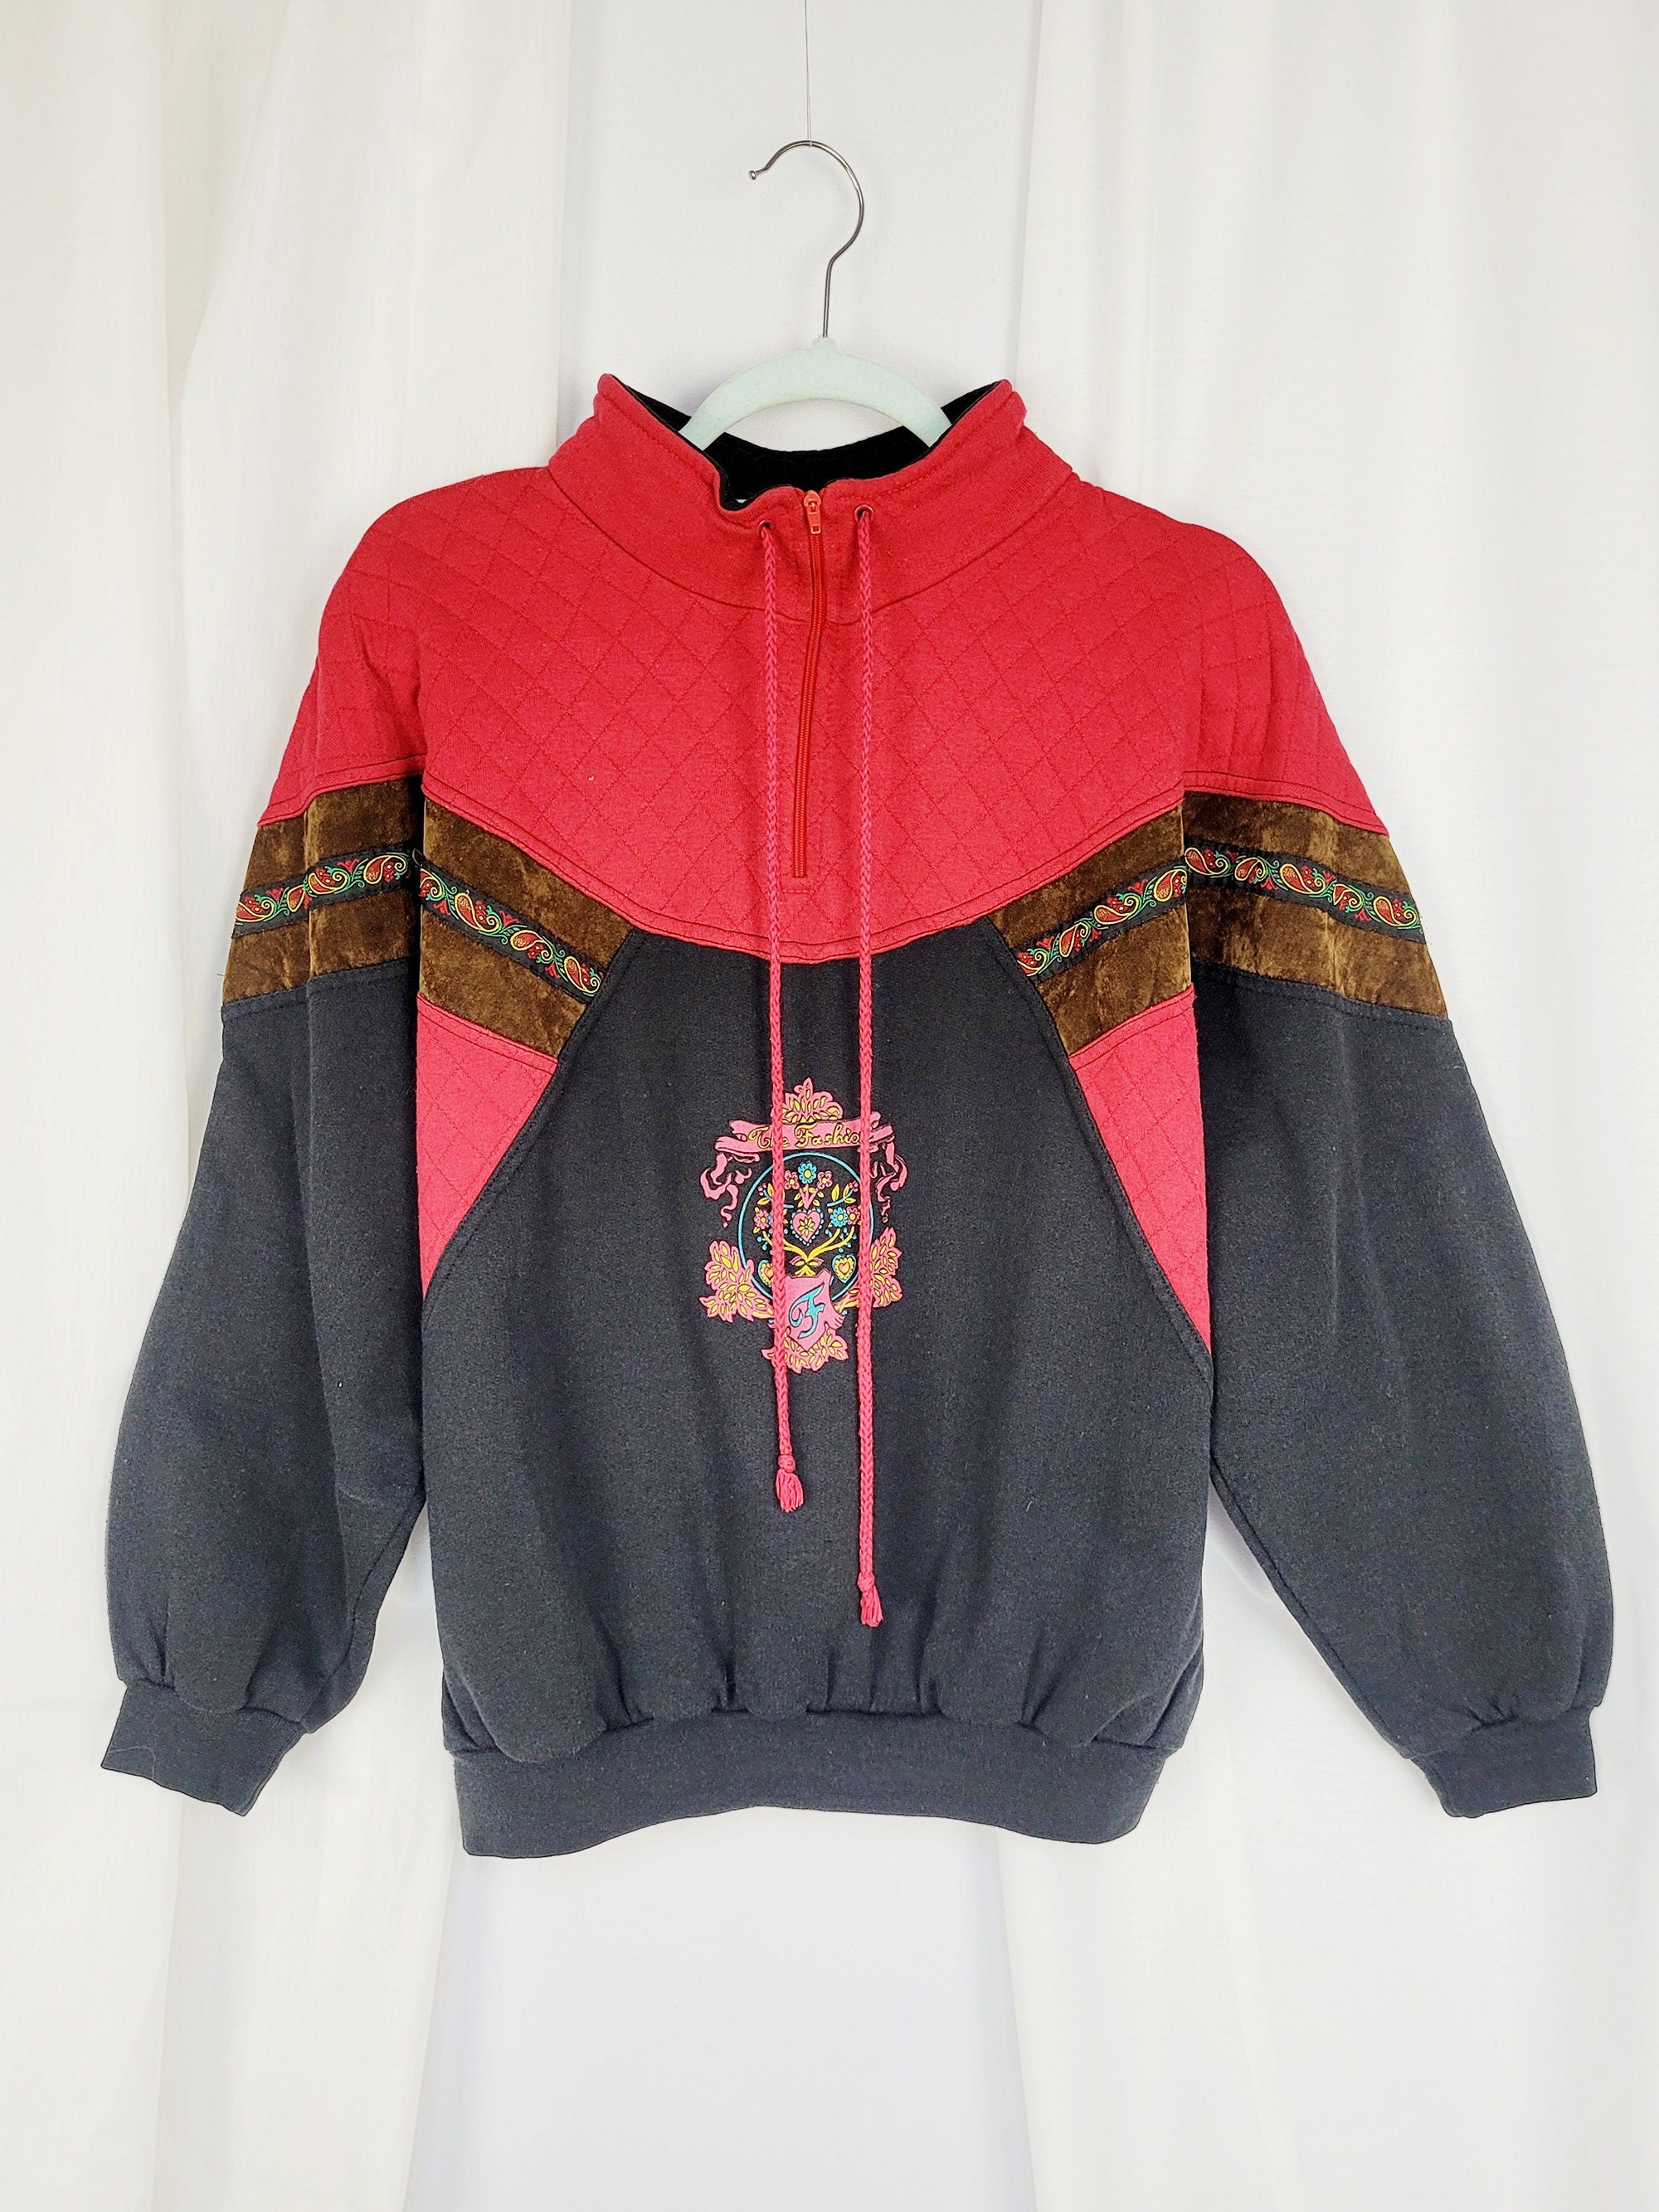 Vintage 90s red black sports grunge quarter zip sweatshirt